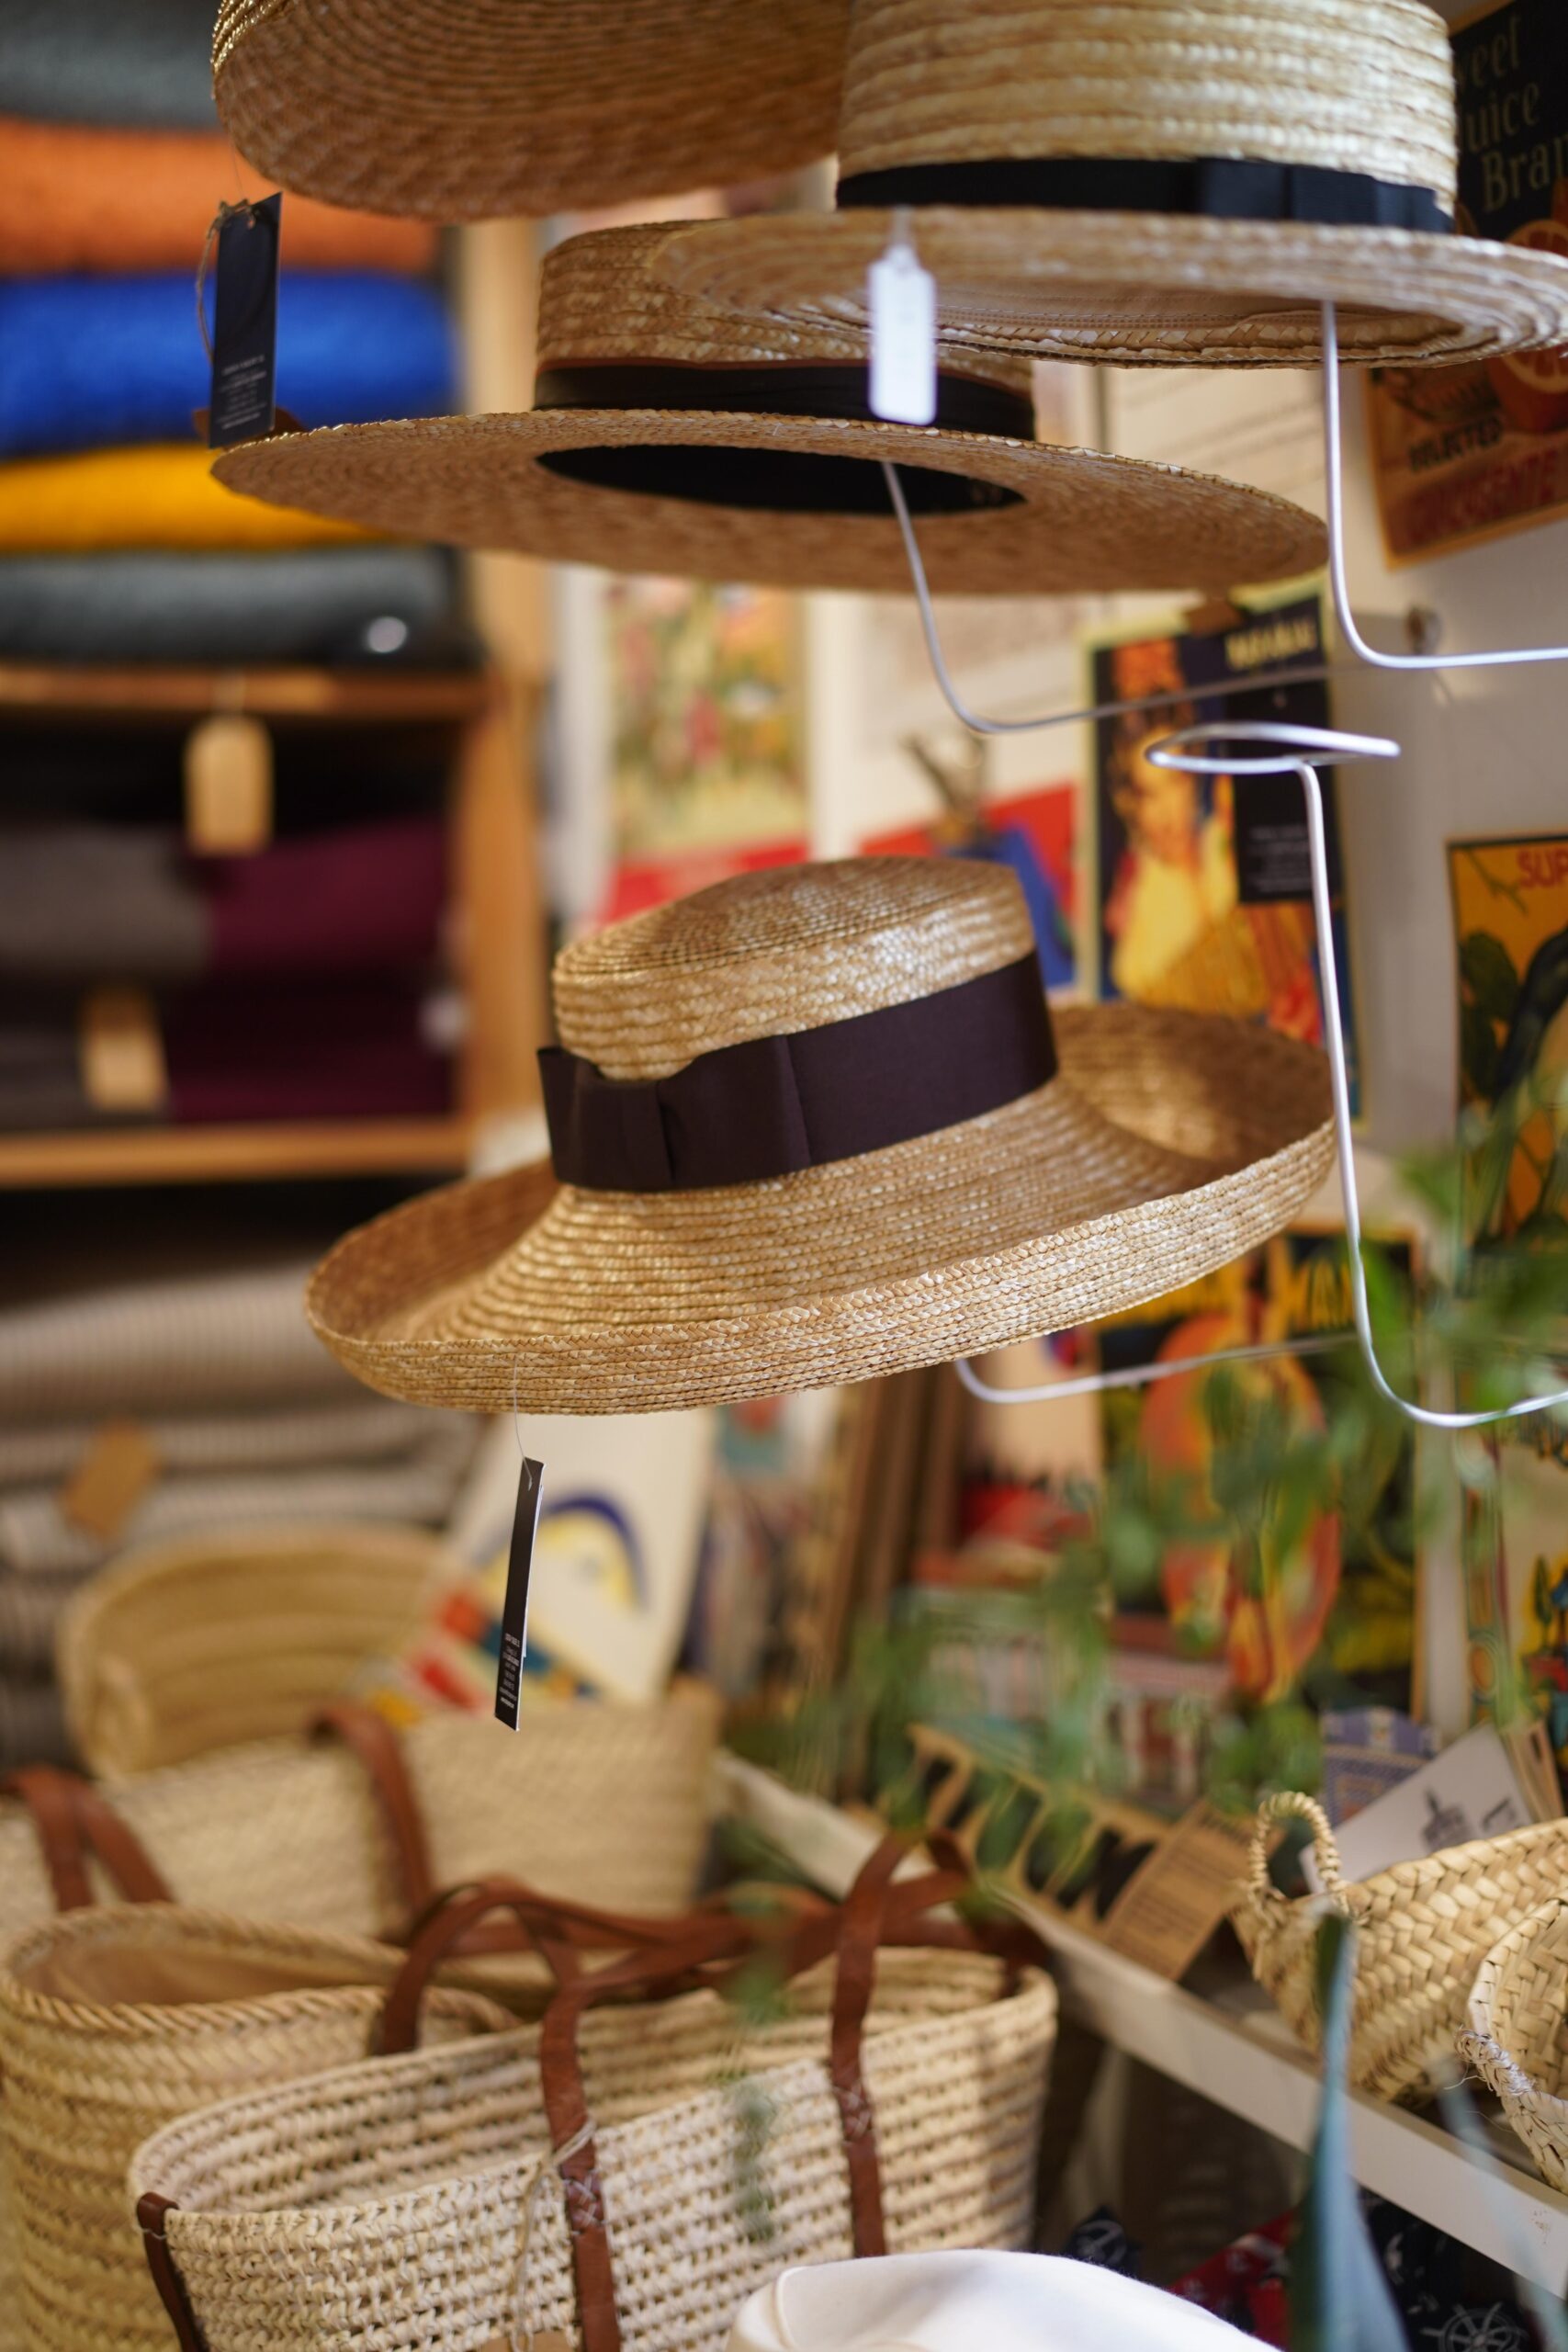 SIMPLE TIENDA: le magasin local ‘made in Spain’ qui prône l’authenticité et la durabilité des objets qui racontent des histoires